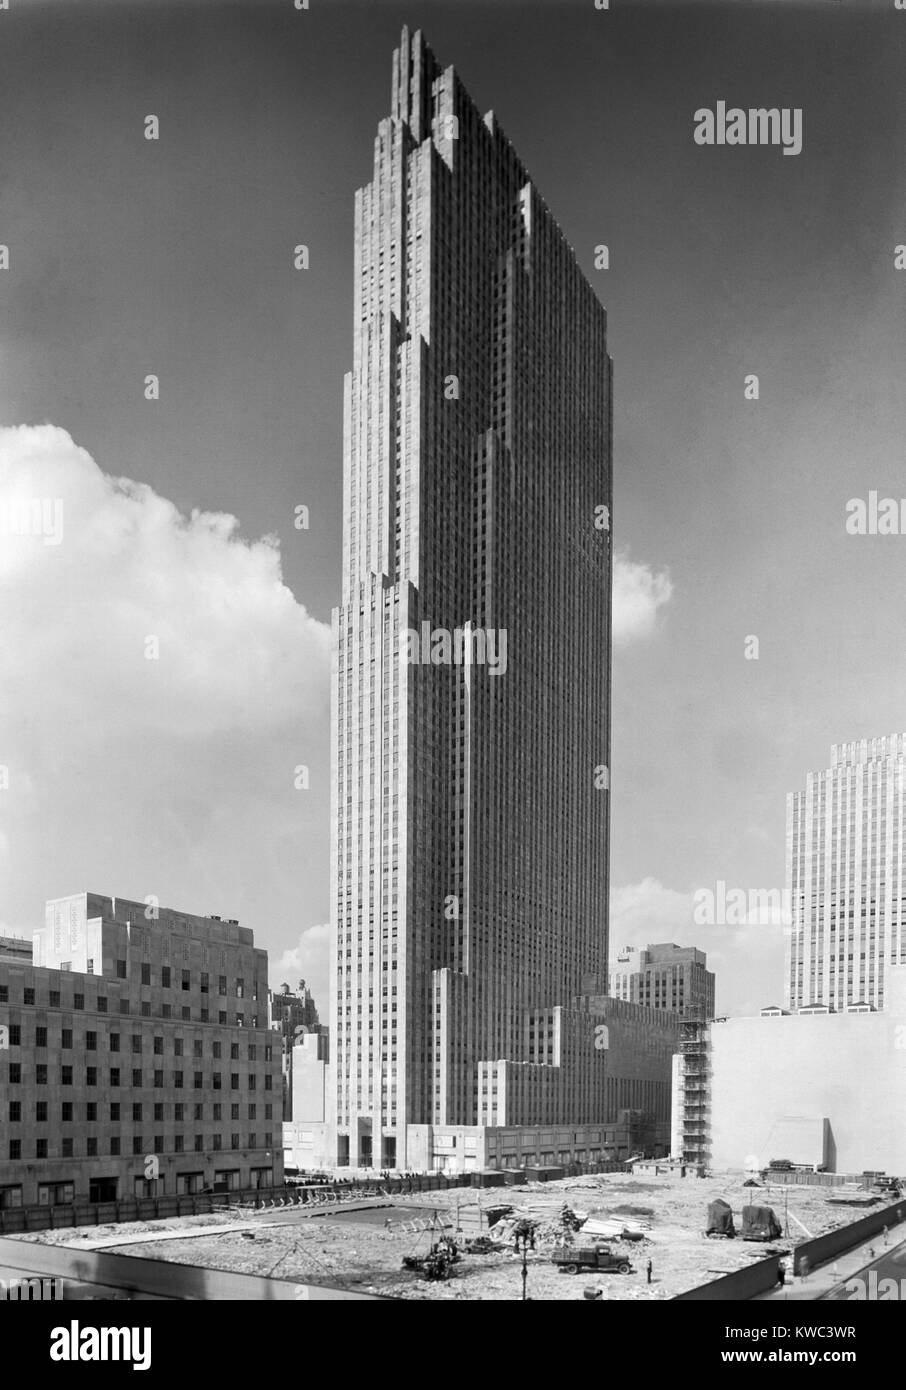 Die neue RCA-Gebäude in Rockefeller Center an Sept. 1, 1933. Die angrenzenden viel erwarten. Es war das Gebäude des Komplexes von 19 kommerziellen Gebäuden zwischen der 48th und 51th Straße in New York City erbaut zwischen 1930 und 1939. Foto von Samuel H. Gottscho. (BSLOC 2015 14 200) Stockfoto